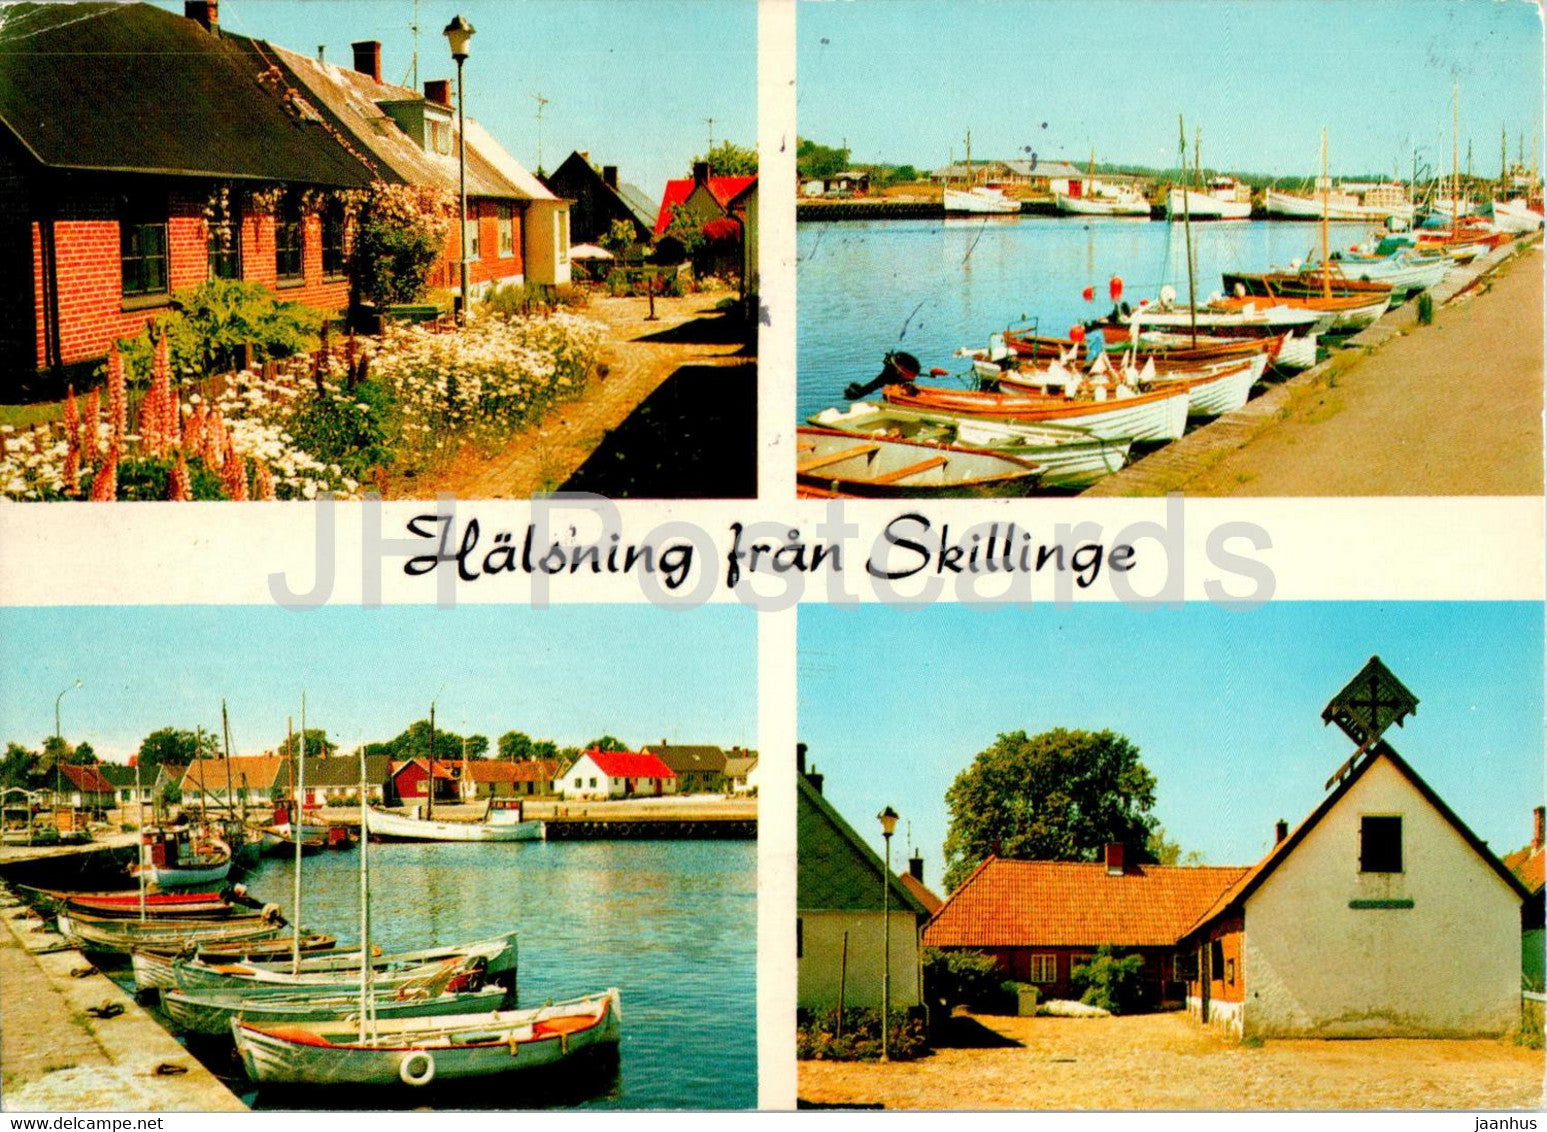 Halsning fran Skillinge - boat - multiview - 1979 - Denmark - used - JH Postcards